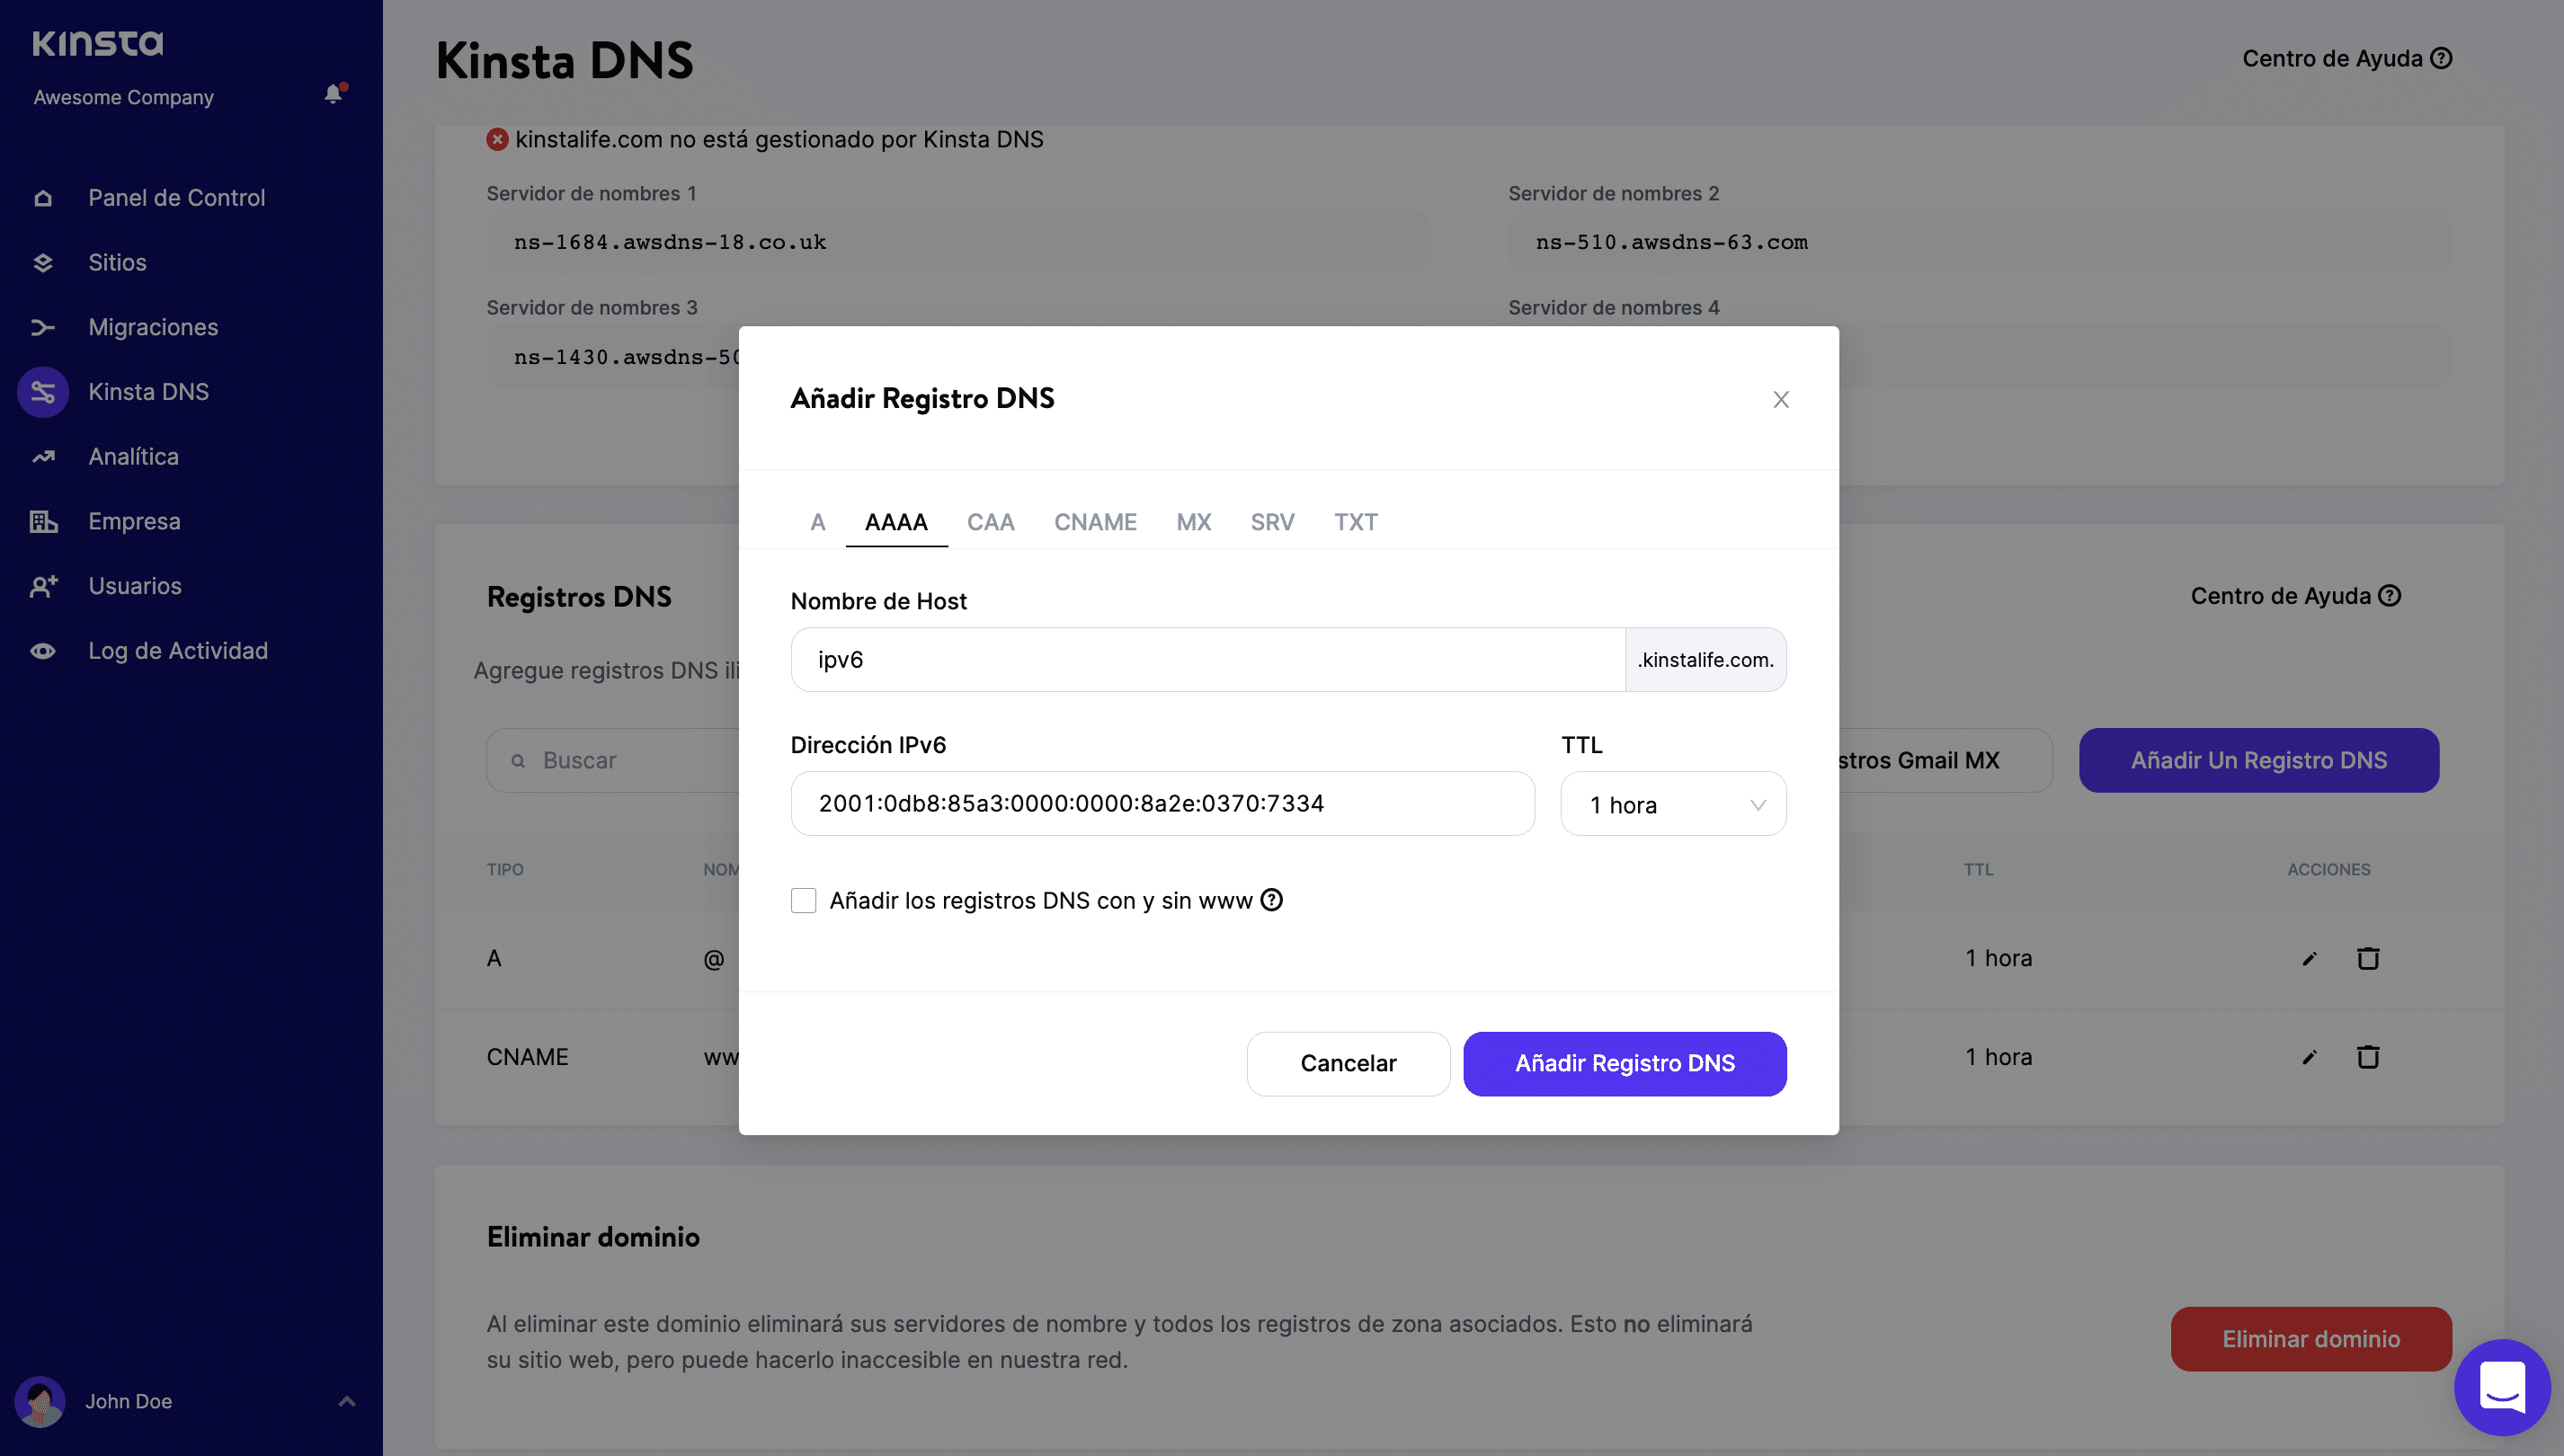 Añadir un registro AAAA en Kinsta DNS.